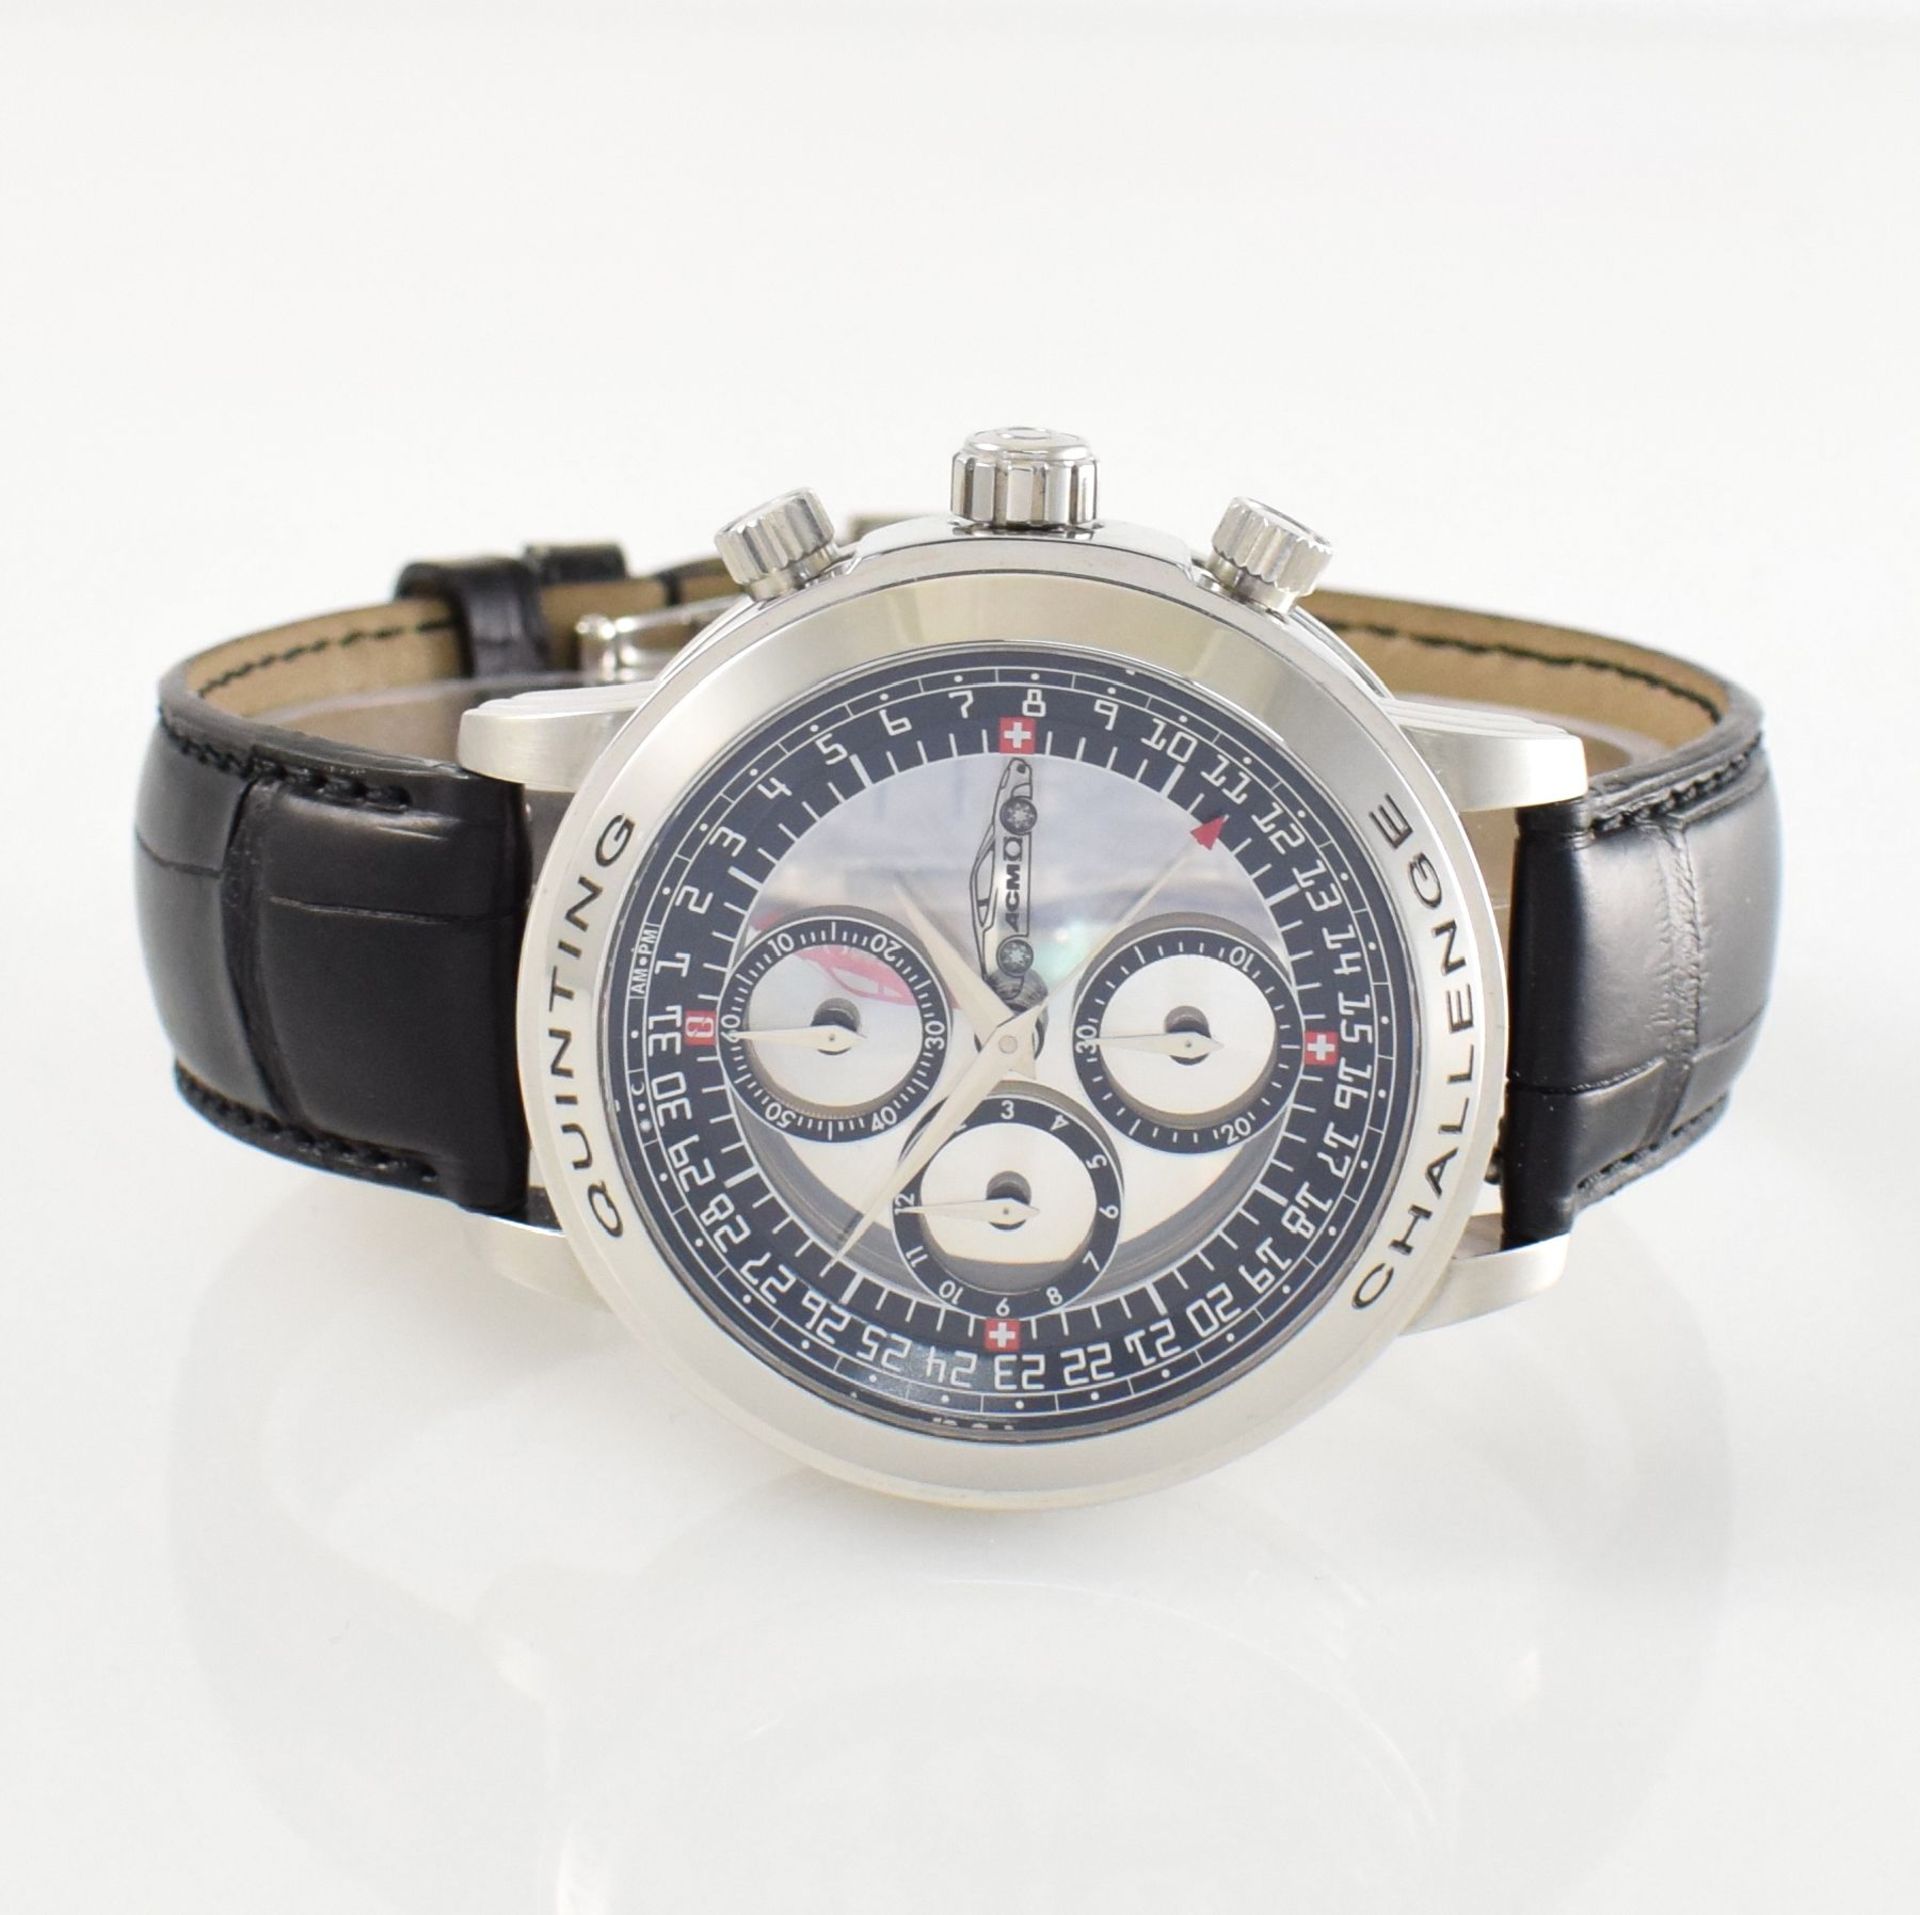 QUINTING seltener Armbandchronograph mit mysterieuser Anzeige "Ferrari Challenge", Ref. QSL55FC, auf